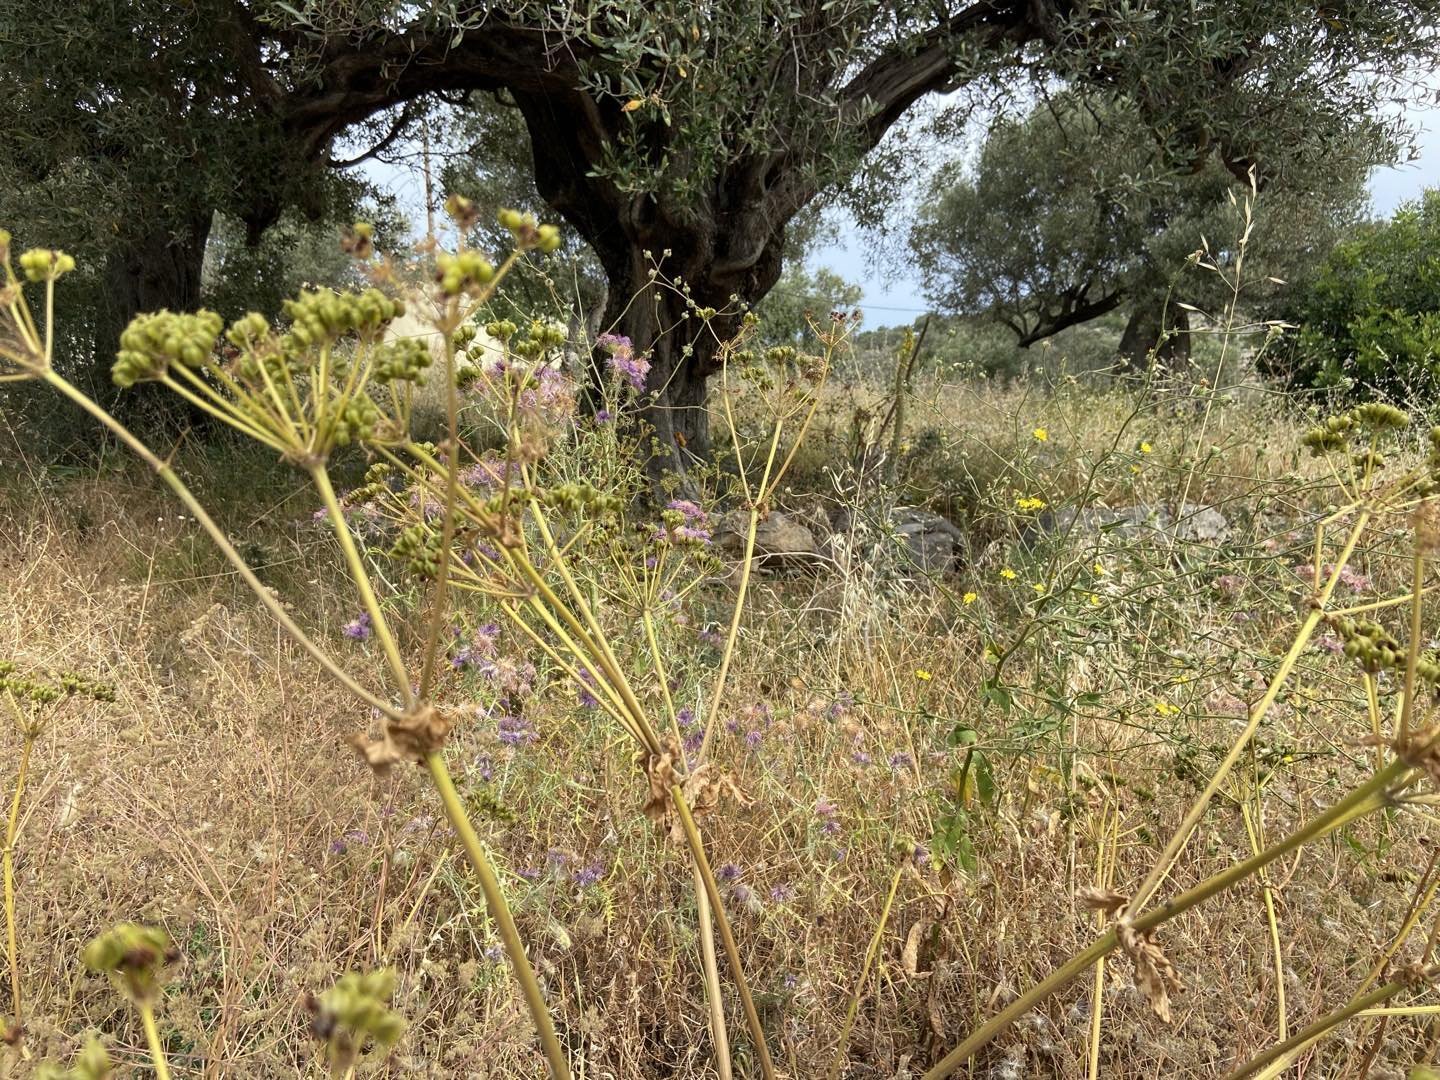 Olive Grove and wild flowers
Greece

#greece🇬🇷 #greekislands #greekislandstyle #wildflowers #artistsinspiration #olivetreeviews #olivetrees🌿 #olivetreeseverywhere #meditteraneanstyle #mediteraneangarden #greekspring #lesleyseegerpaintings #greekis